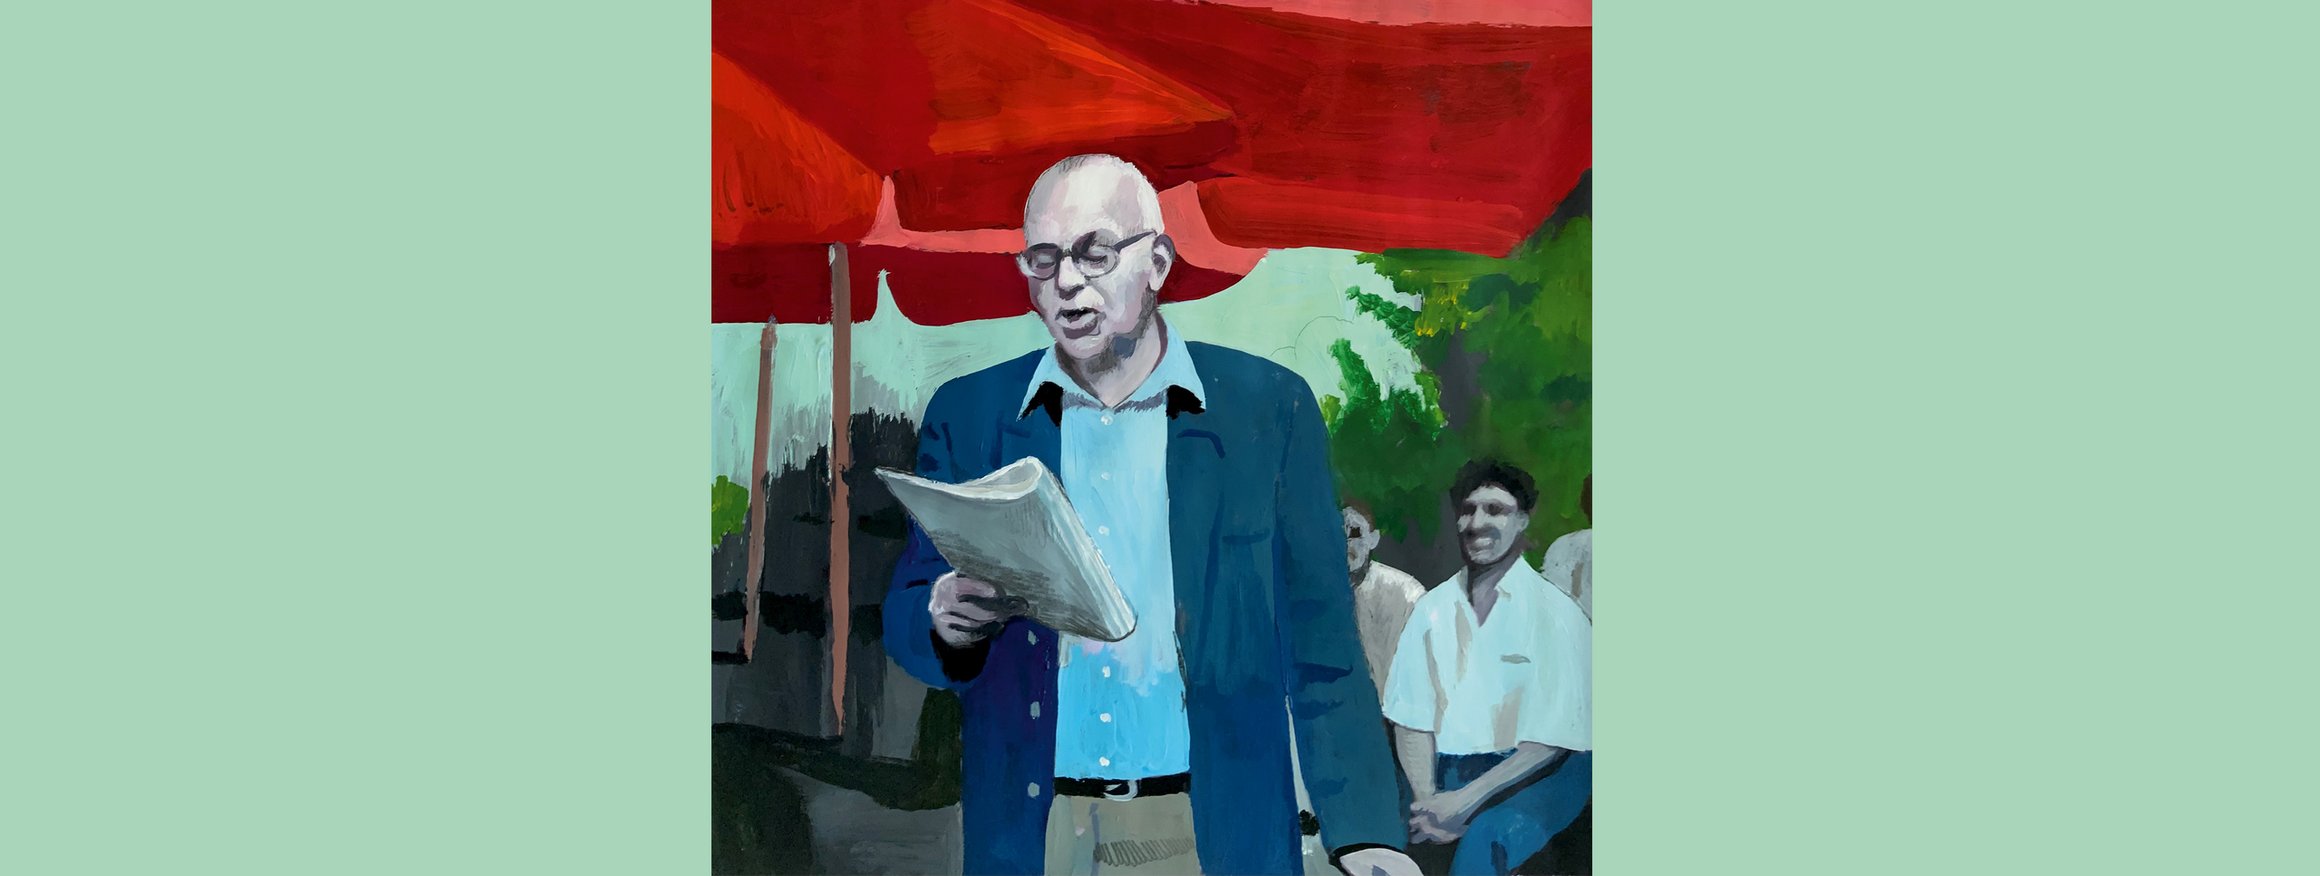 Die Illustration zeigt einen älteren Mann, gekleidet mit Hemd und Blazer, der eine Brille trägt, und laut etwas vor einer Gruppe Menschen vorliest